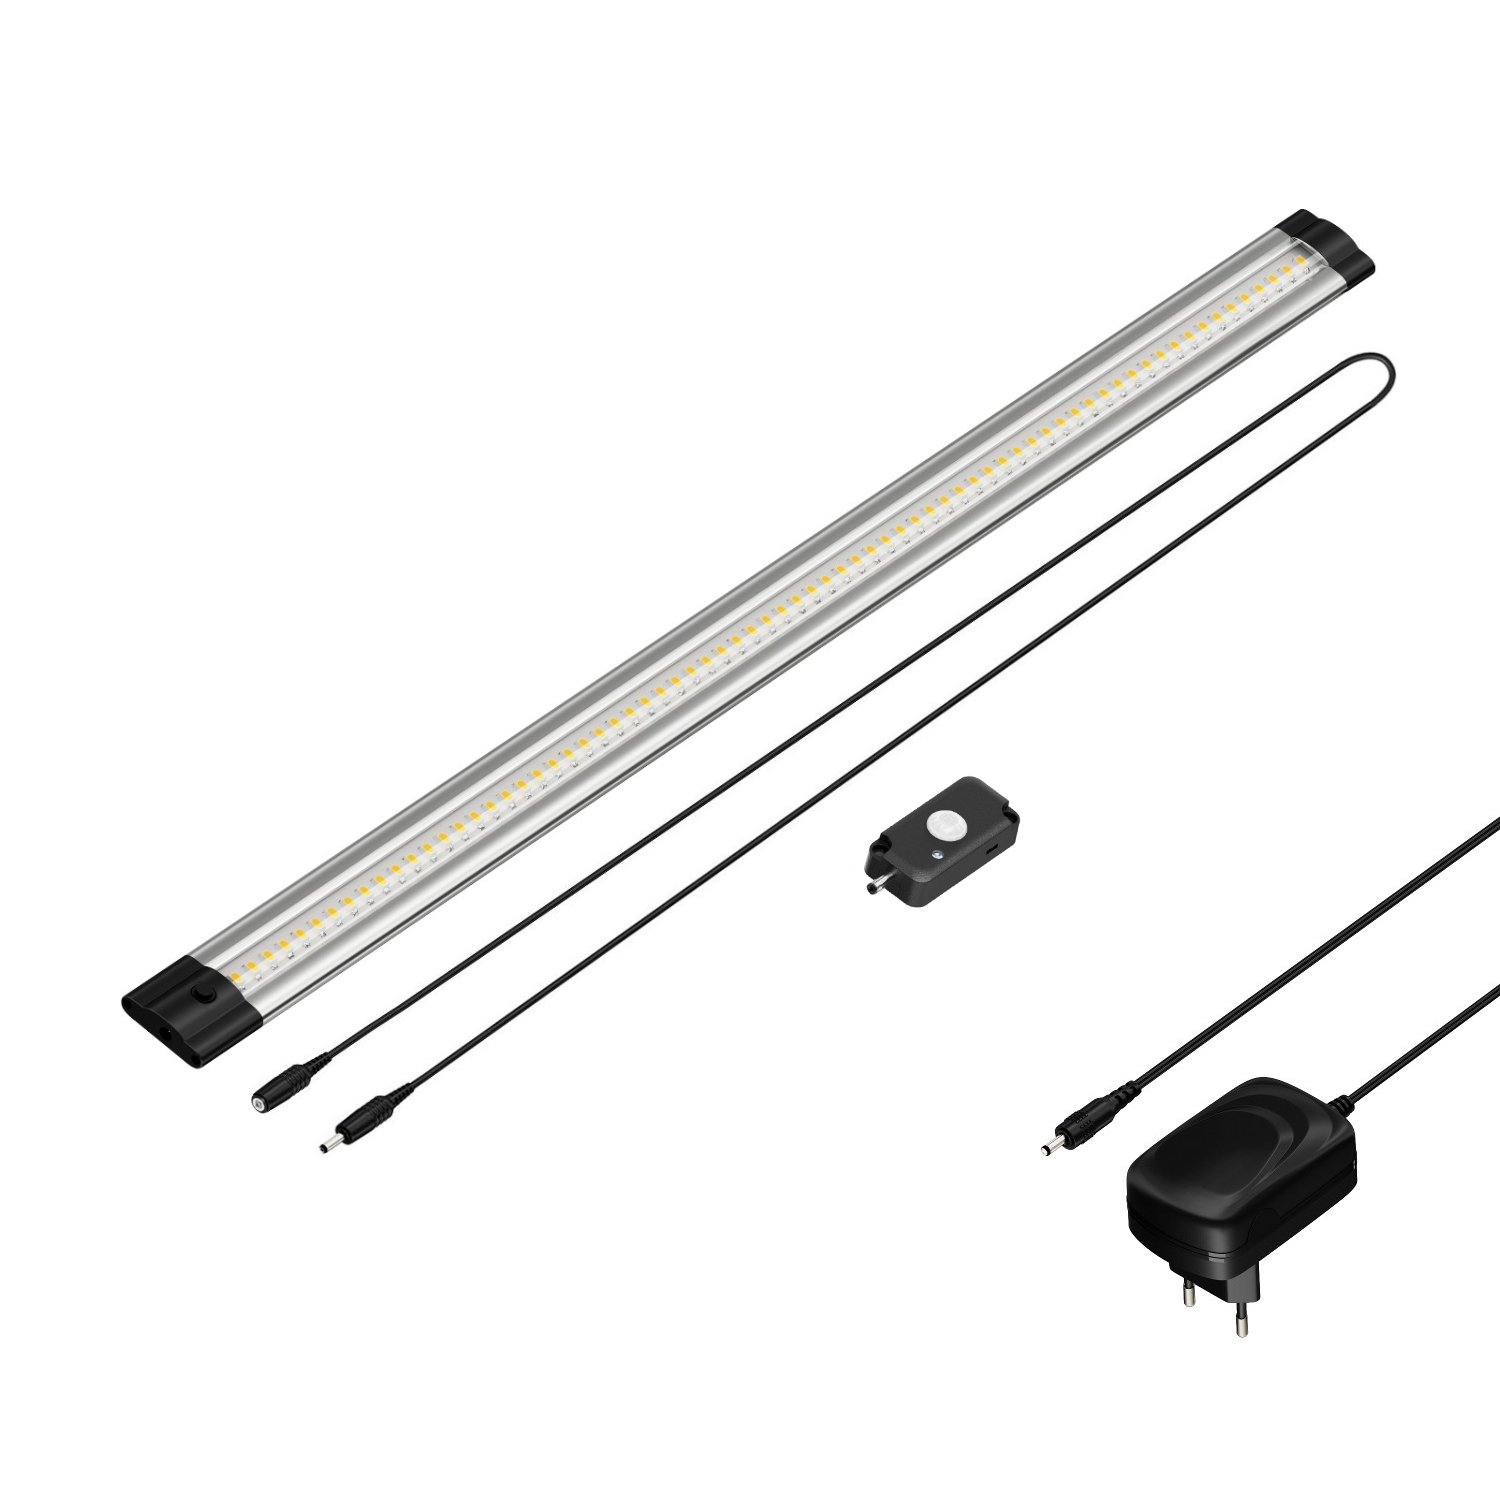 parlat LED Unterbau-Leuchte Siris mit Netzteil, Bewegungsmelder, flach, 50cm, 655lm, weiß